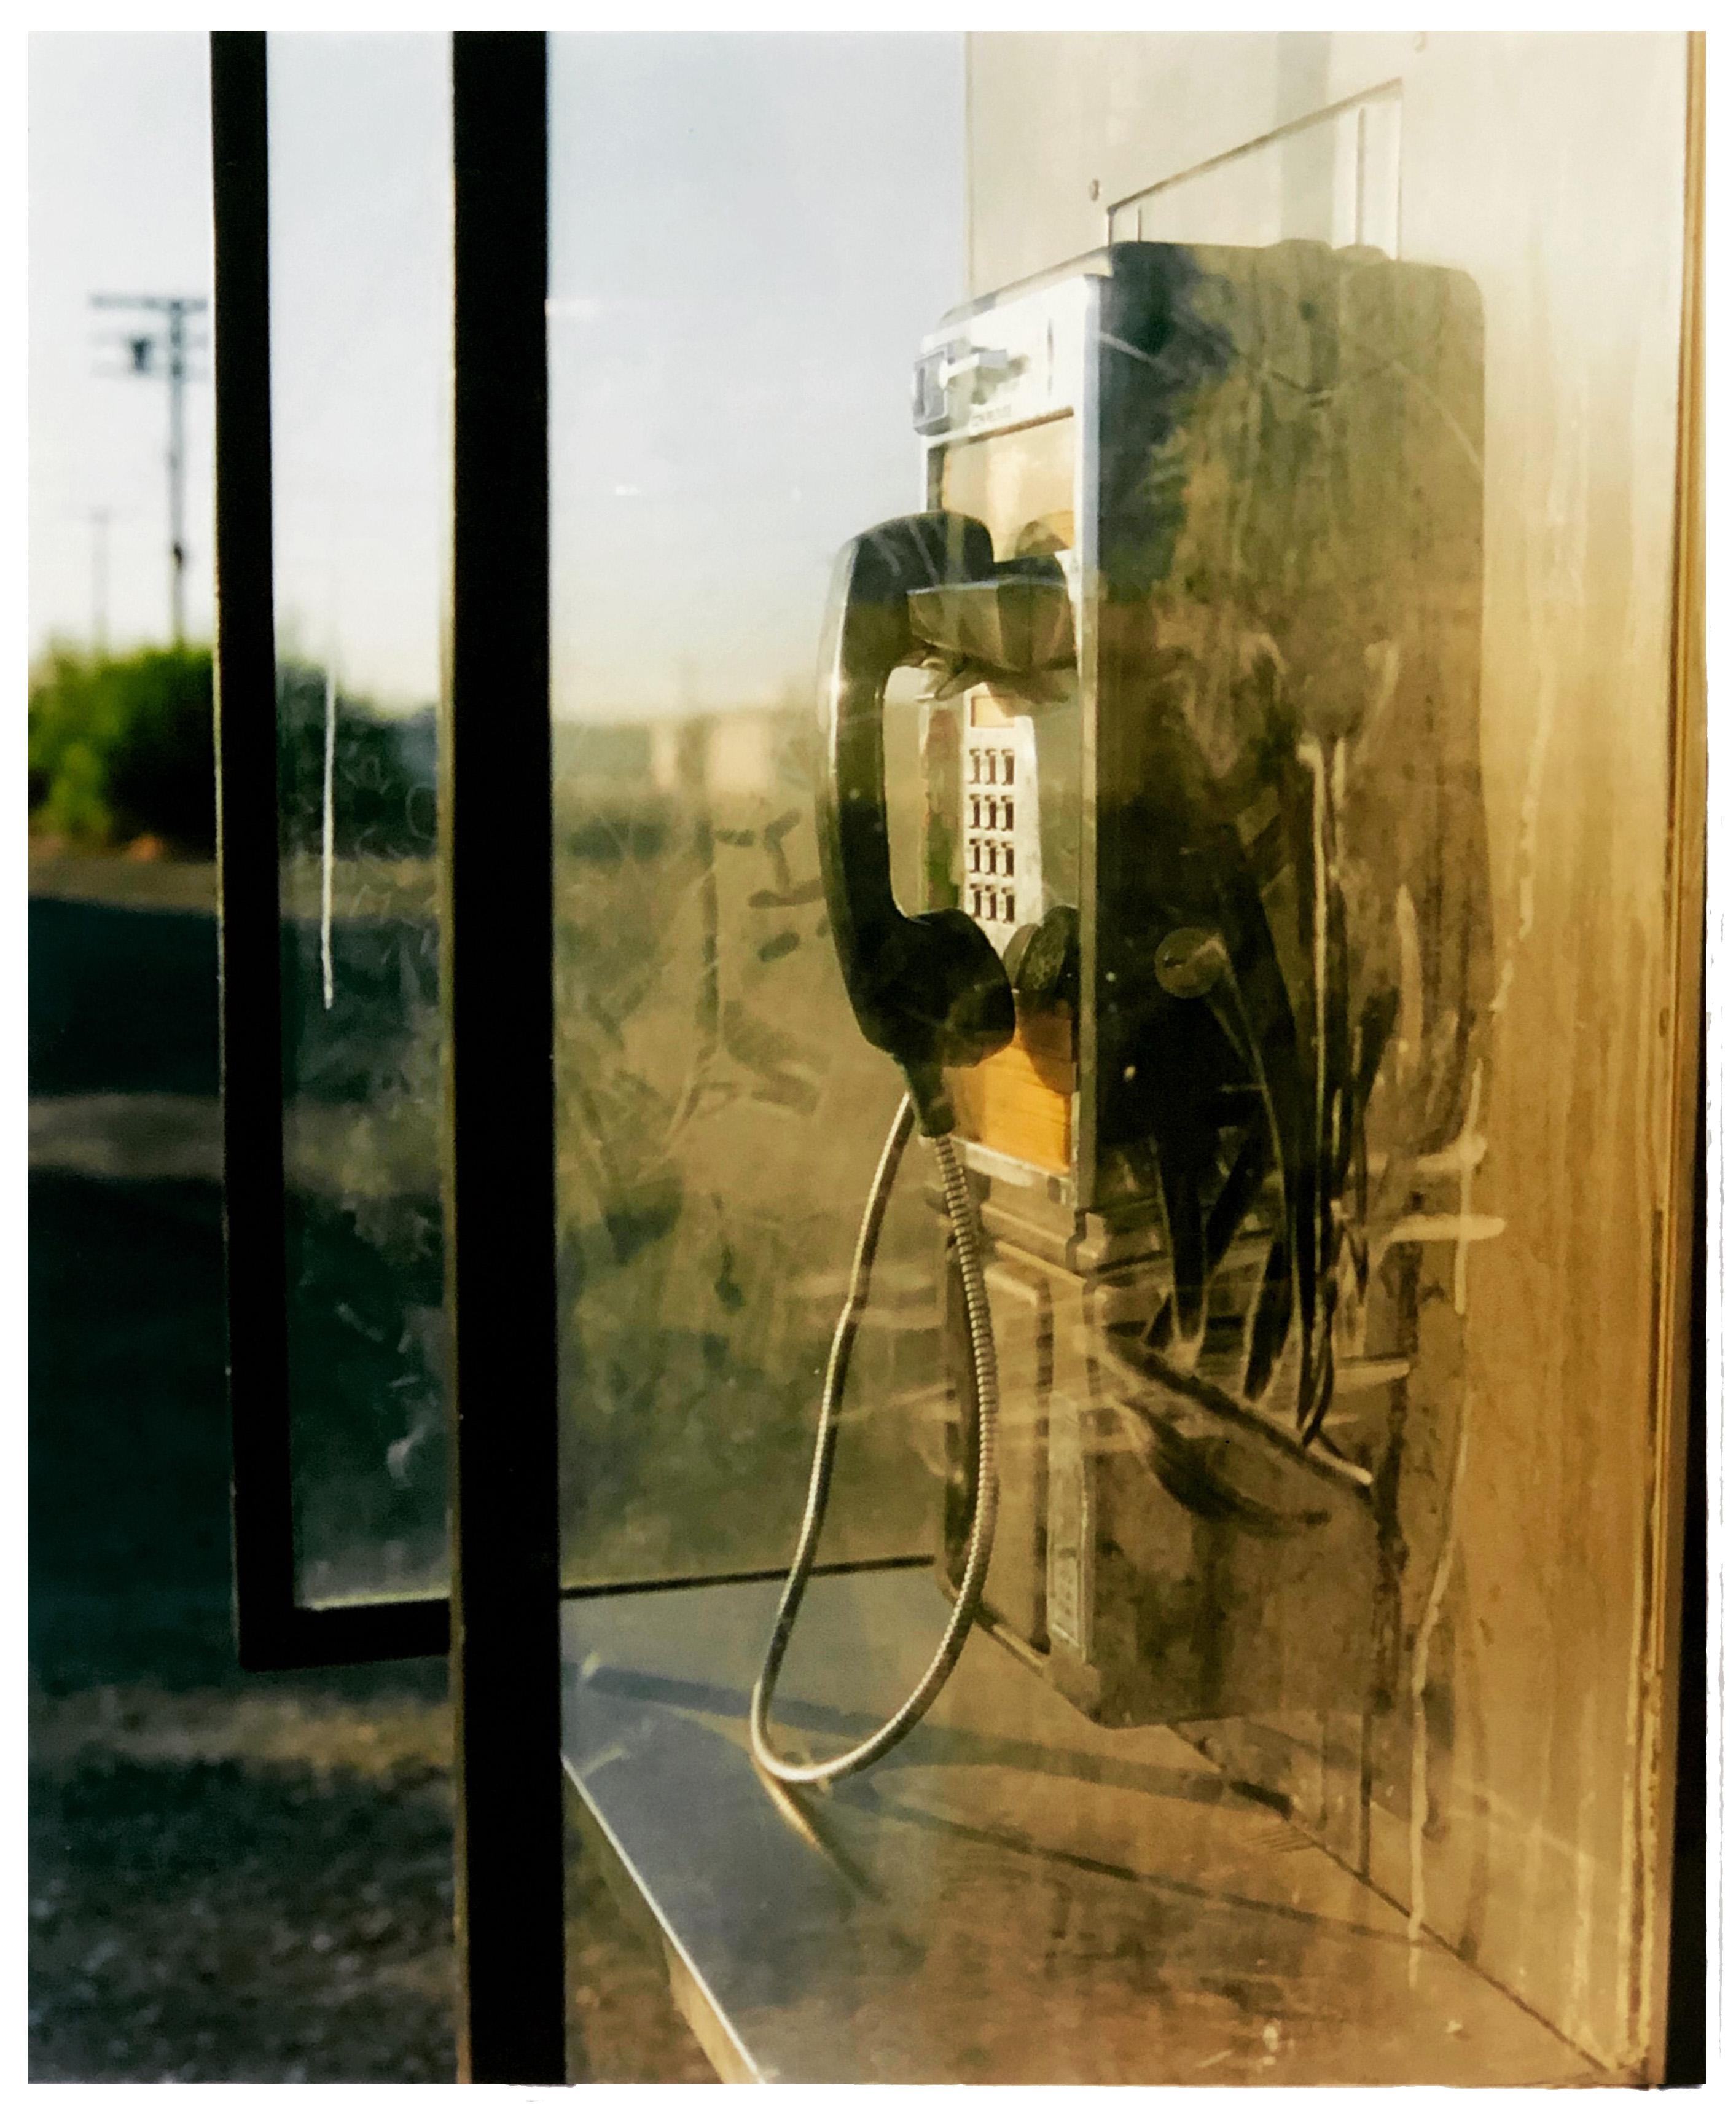 Print Richard Heeps - Boîte d'appel, Salton City, Californie - Photographie couleur américaine